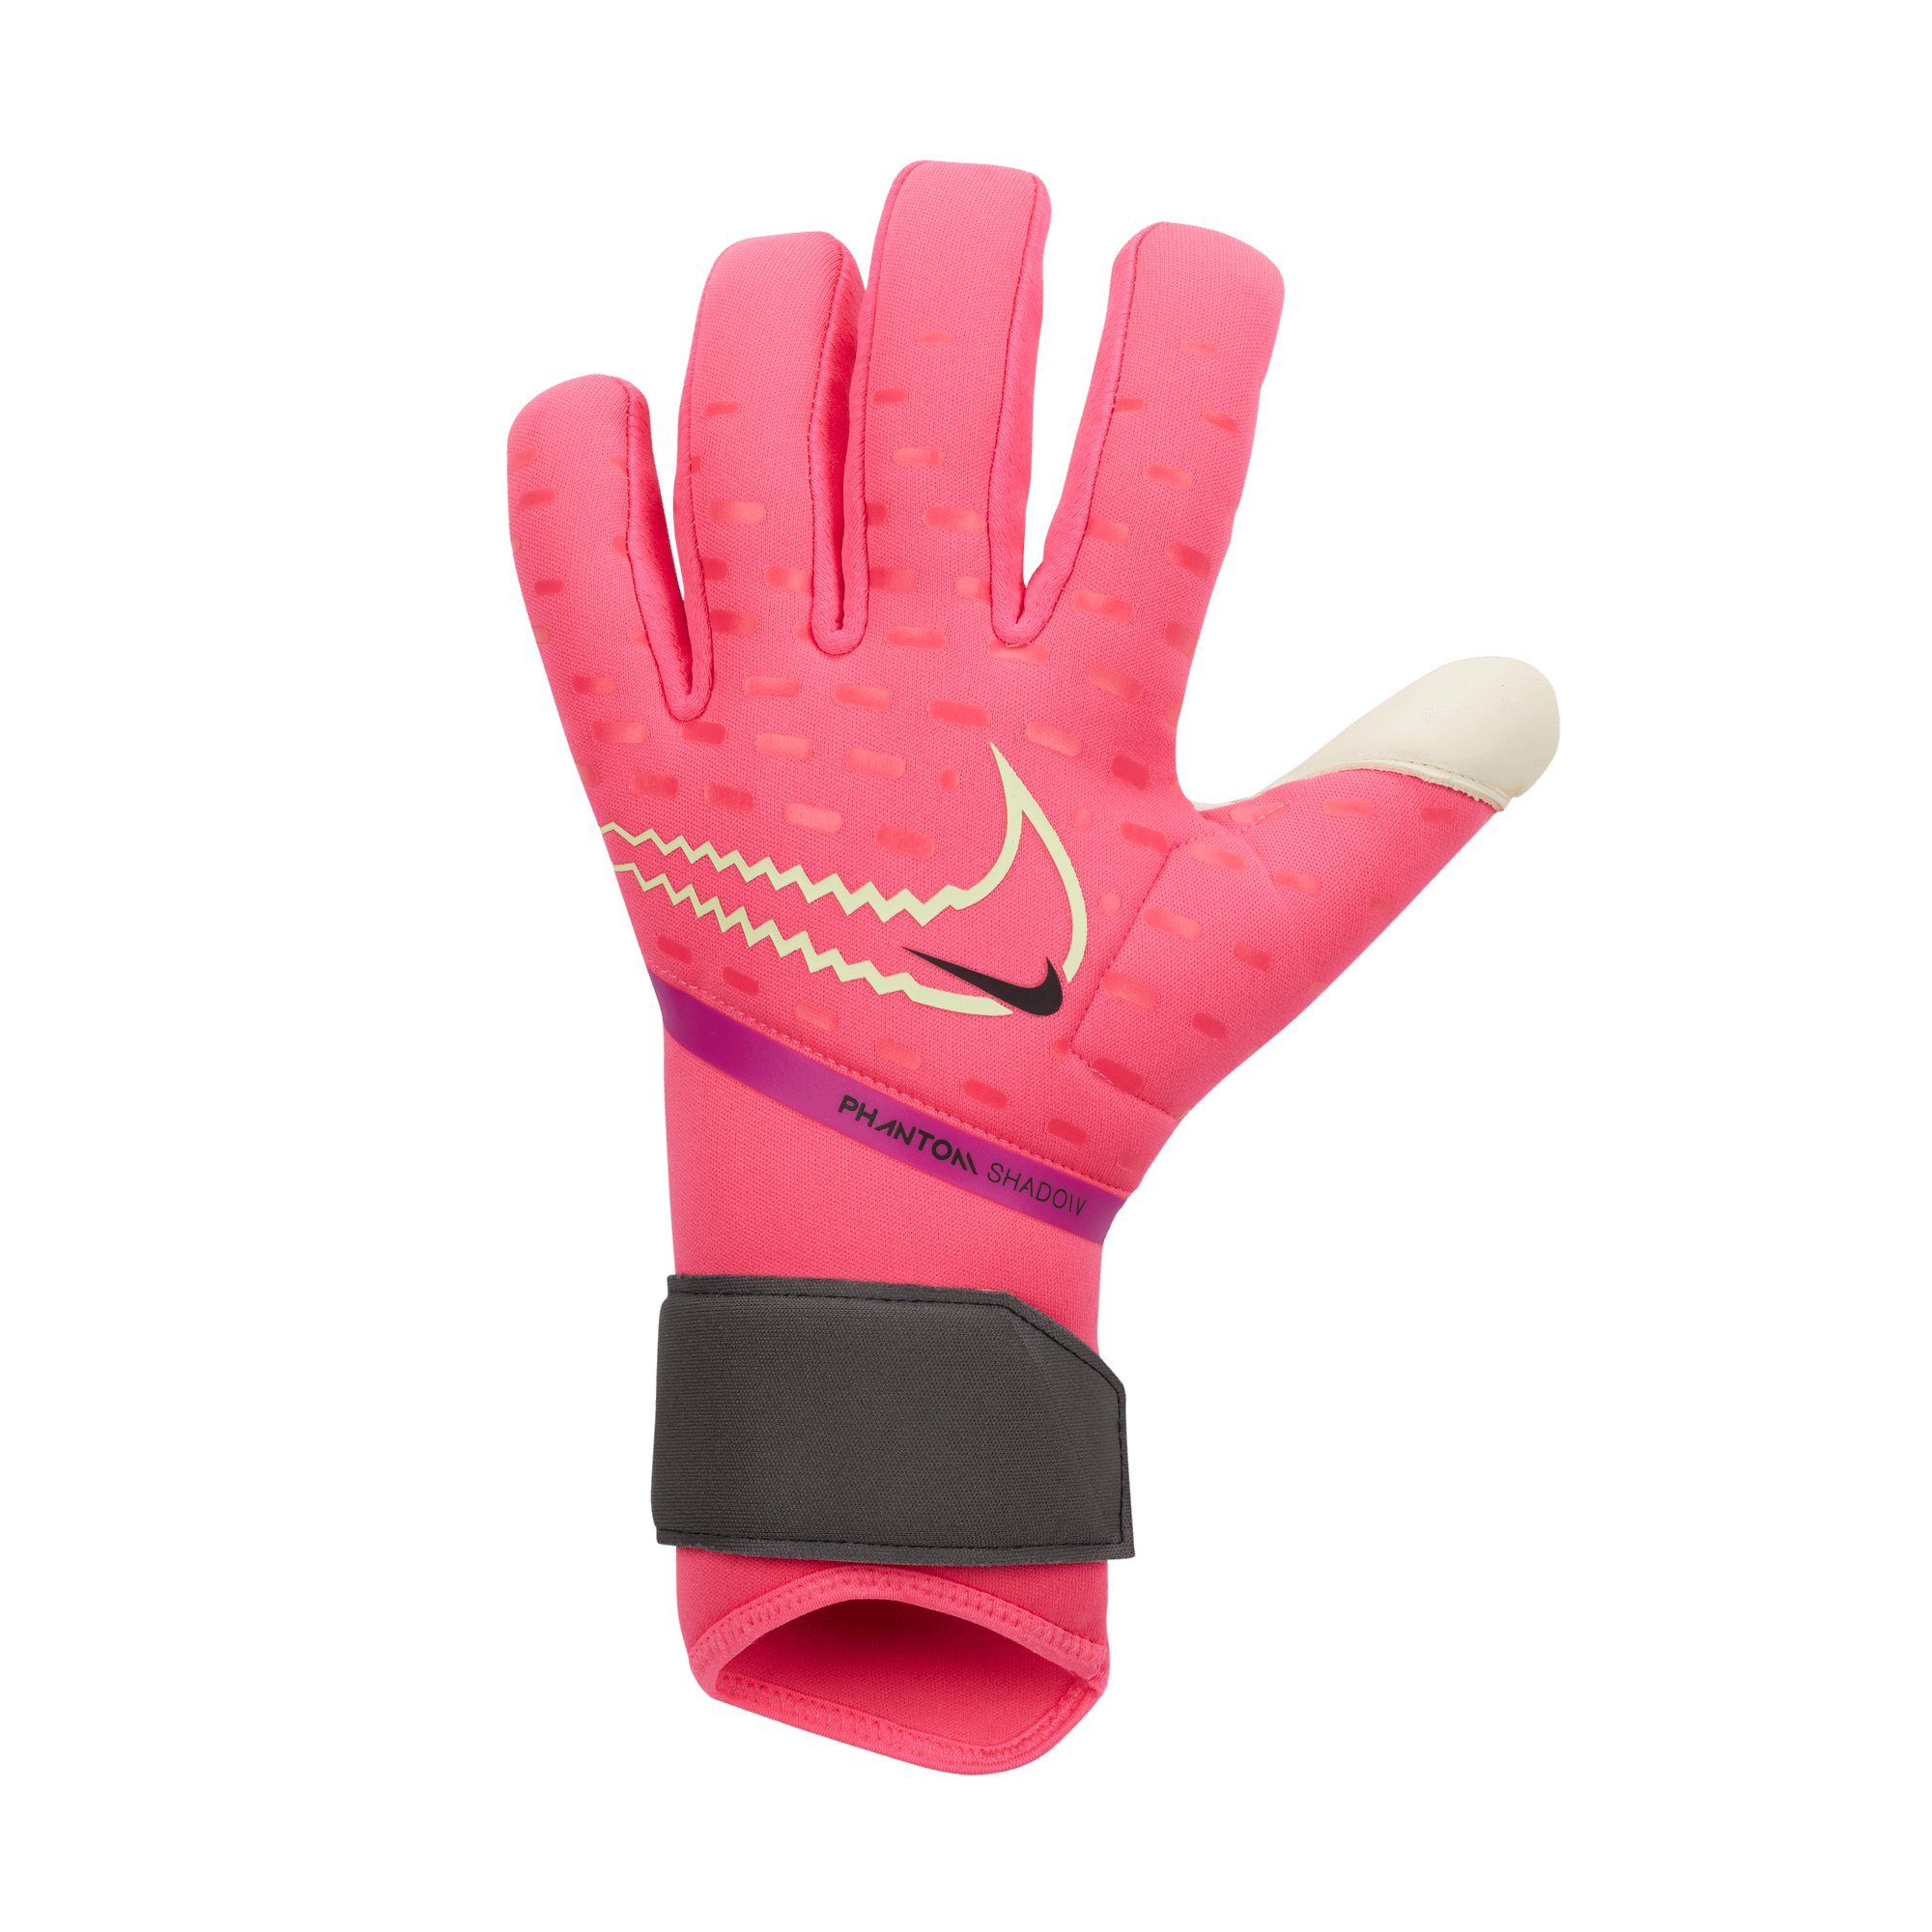 Women's Phantom Grip Glove